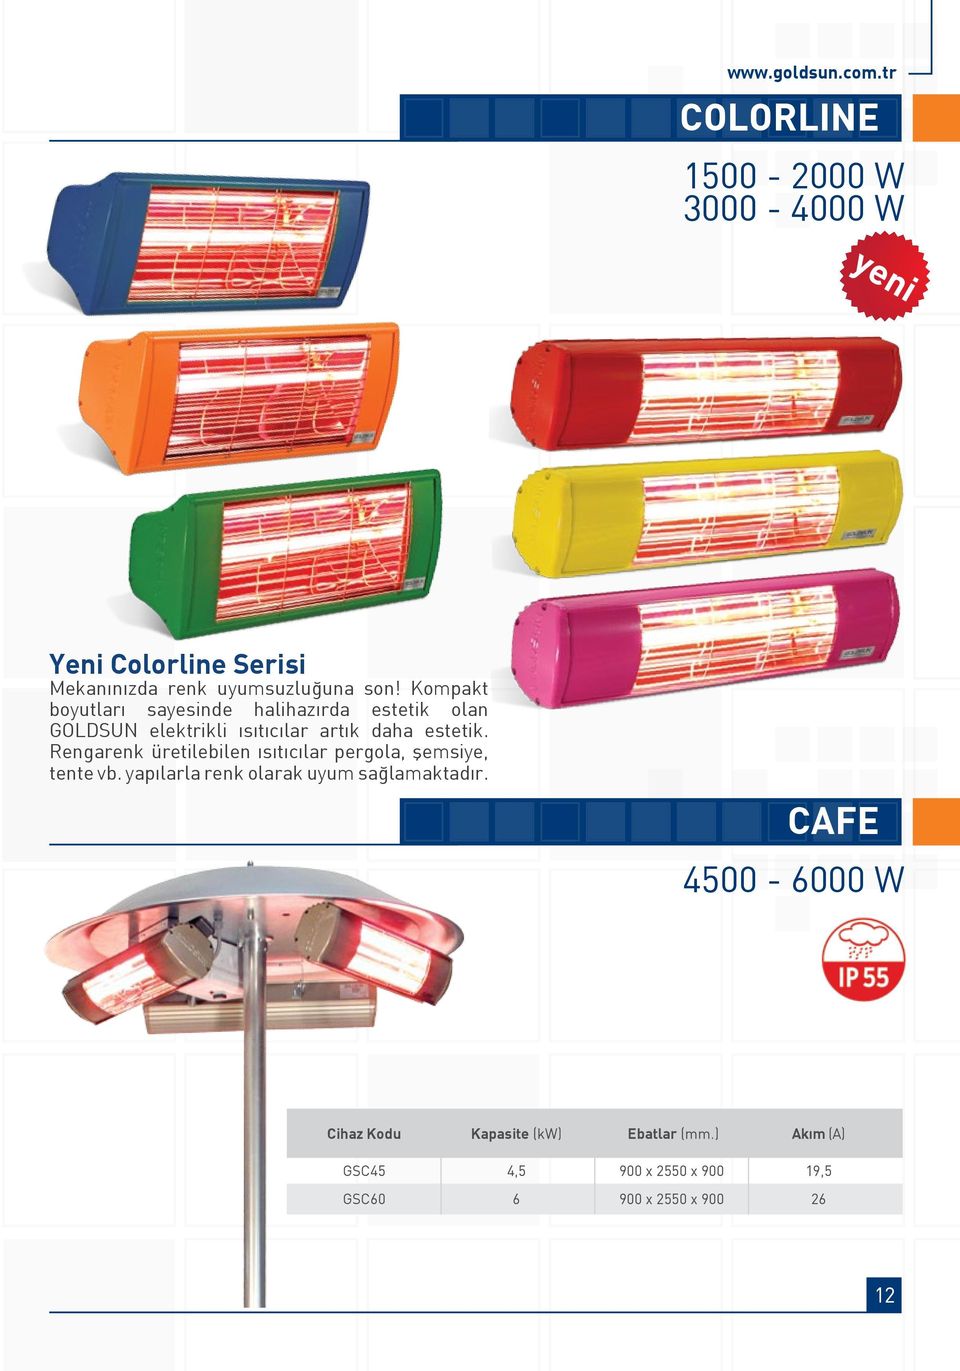 Rengarenk üretilebilen ısıtıcılar pergola, şemsiye, tente vb. yapılarla renk olarak uyum sağlamaktadır.